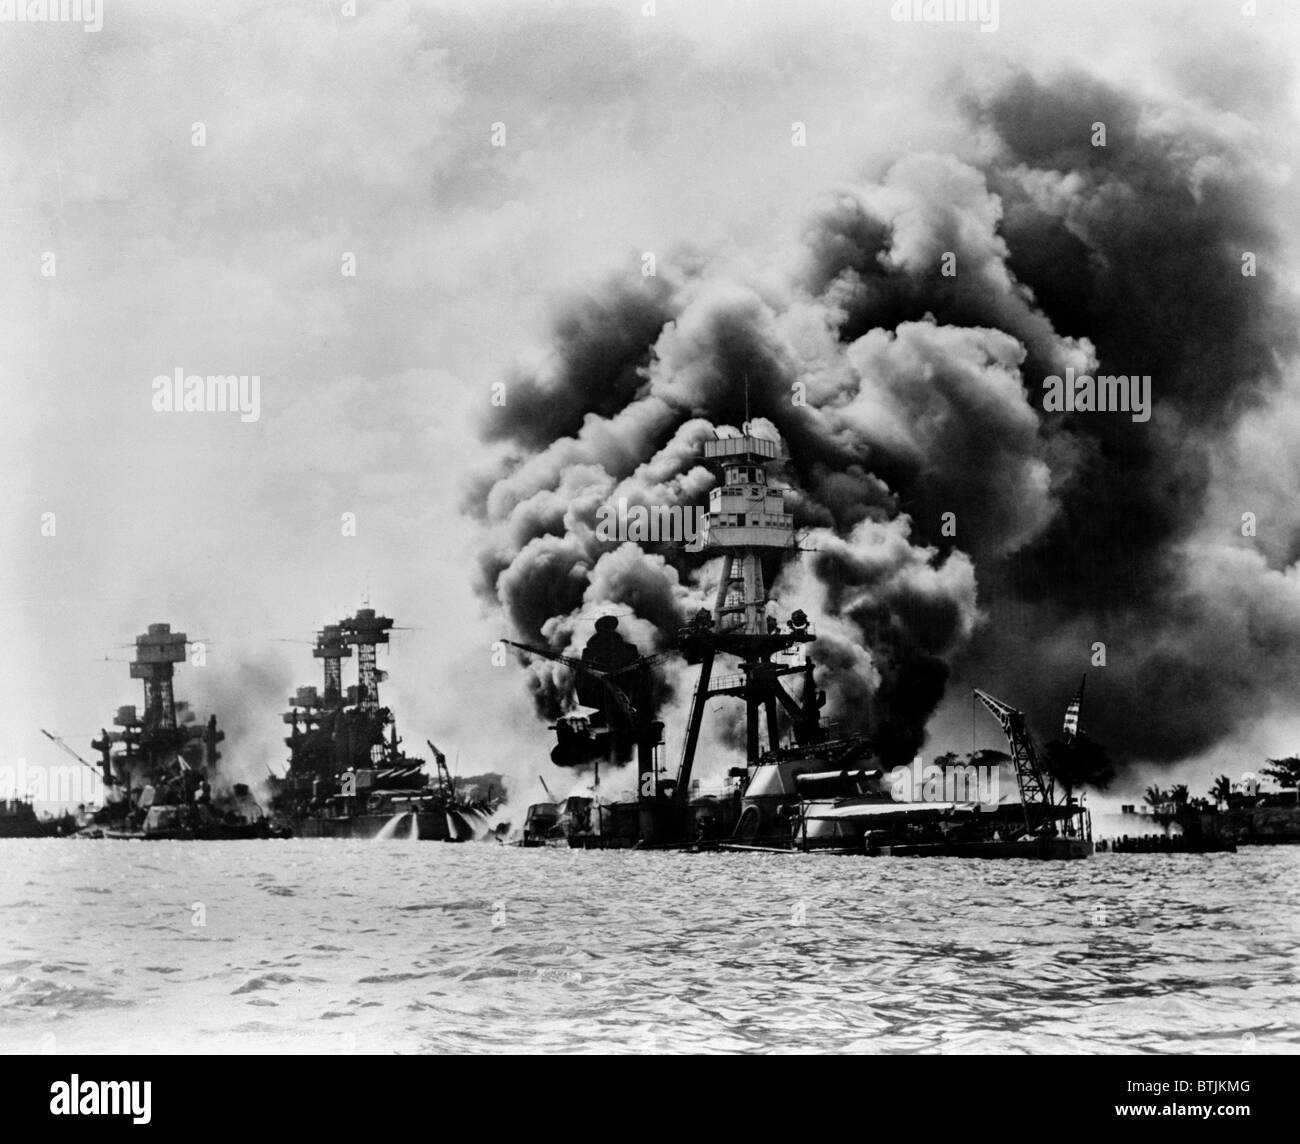 Pearl Harbor: tres acorazados estadounidenses afectadas. De izquierda a derecha: el U.S.S. West Virginia, gravemente dañada; U.S.S. Tennessee, dañados; y U.S.S. Arizona, hundido, 7 de diciembre de 1941 Foto de stock